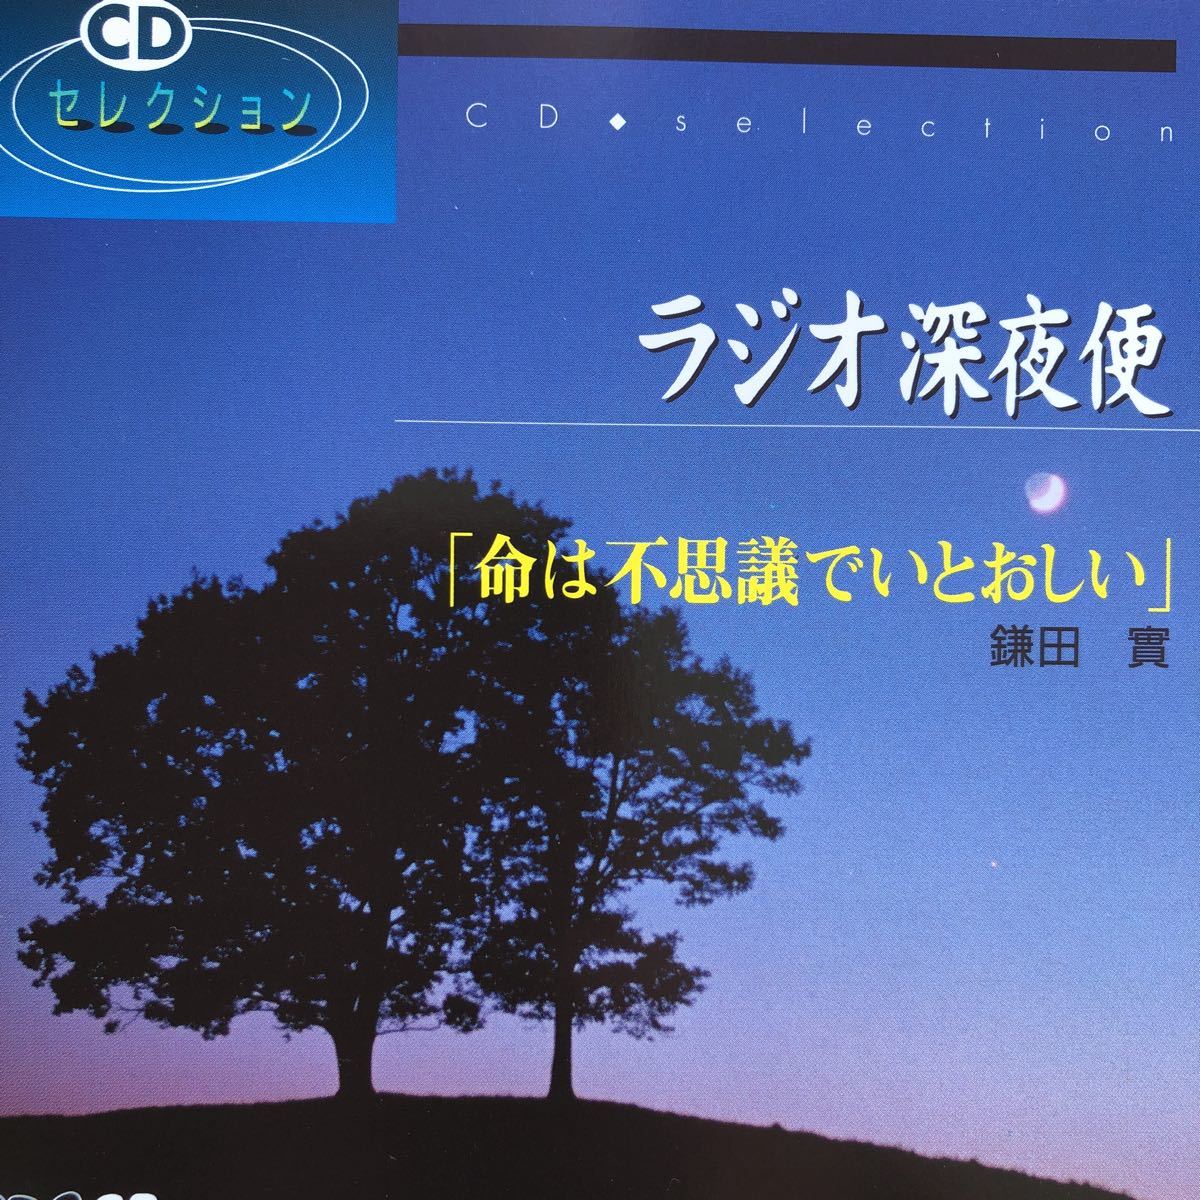  радио поздно ночью рейс [ жизнь. тайна ......] серп рисовое поле .NHK CD